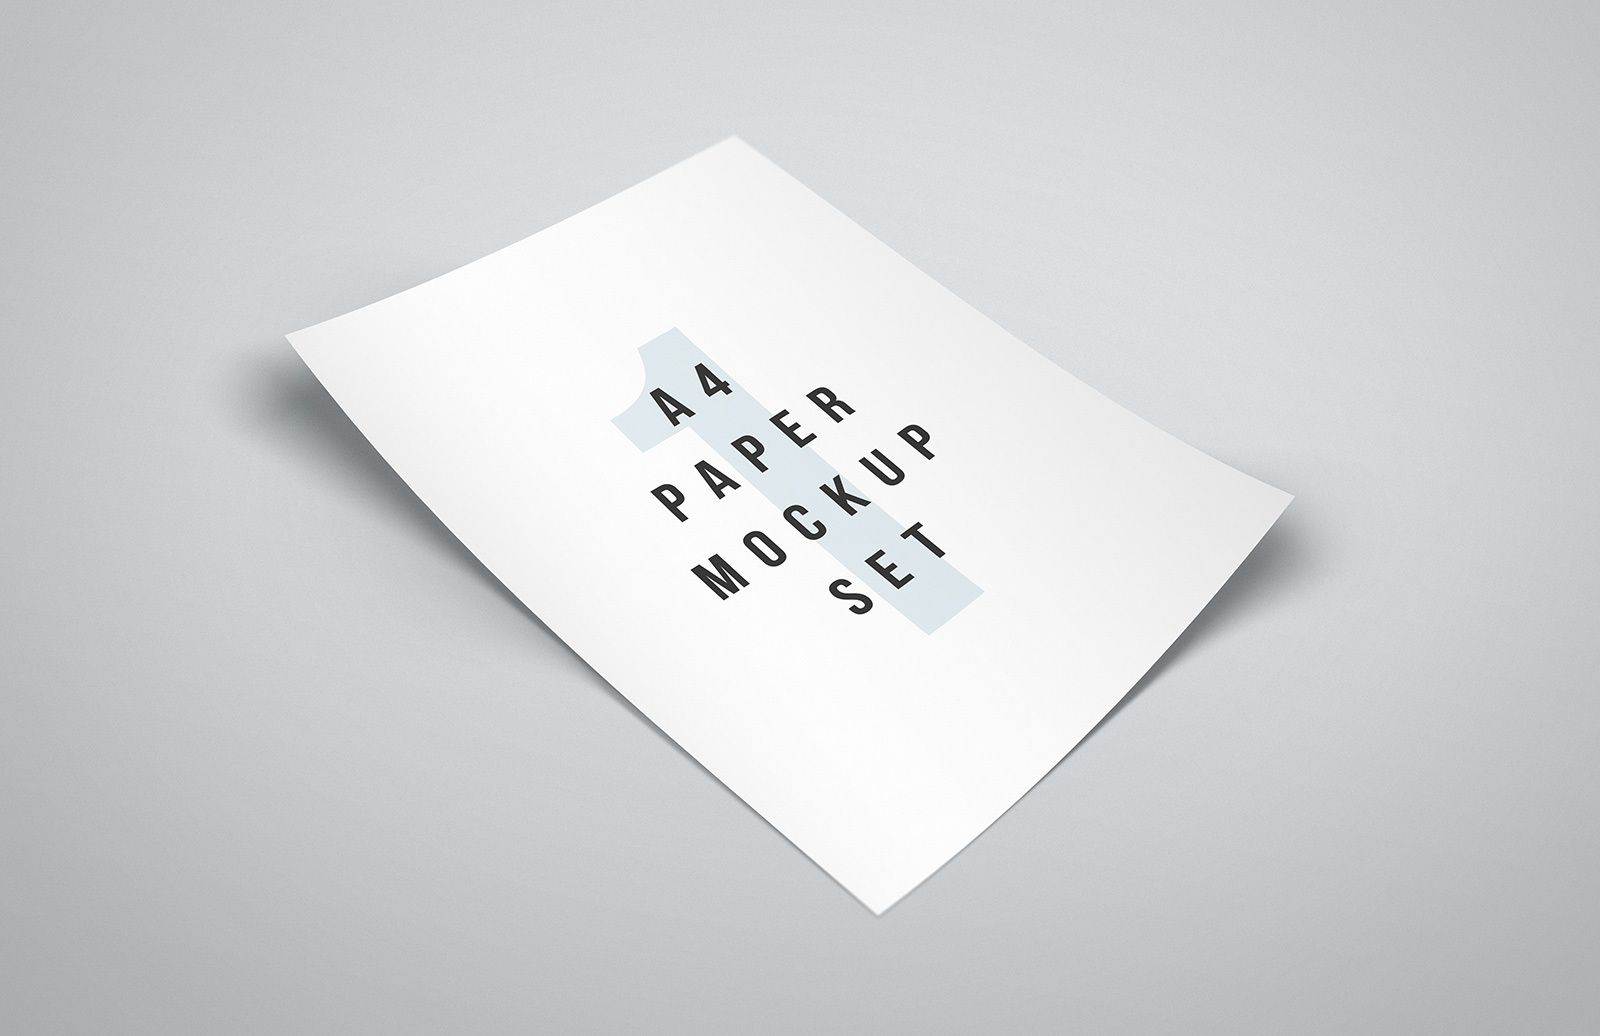 Medialoot - Free A4 Paper Mockup Set | Paper mockup, Paper, A4 paper